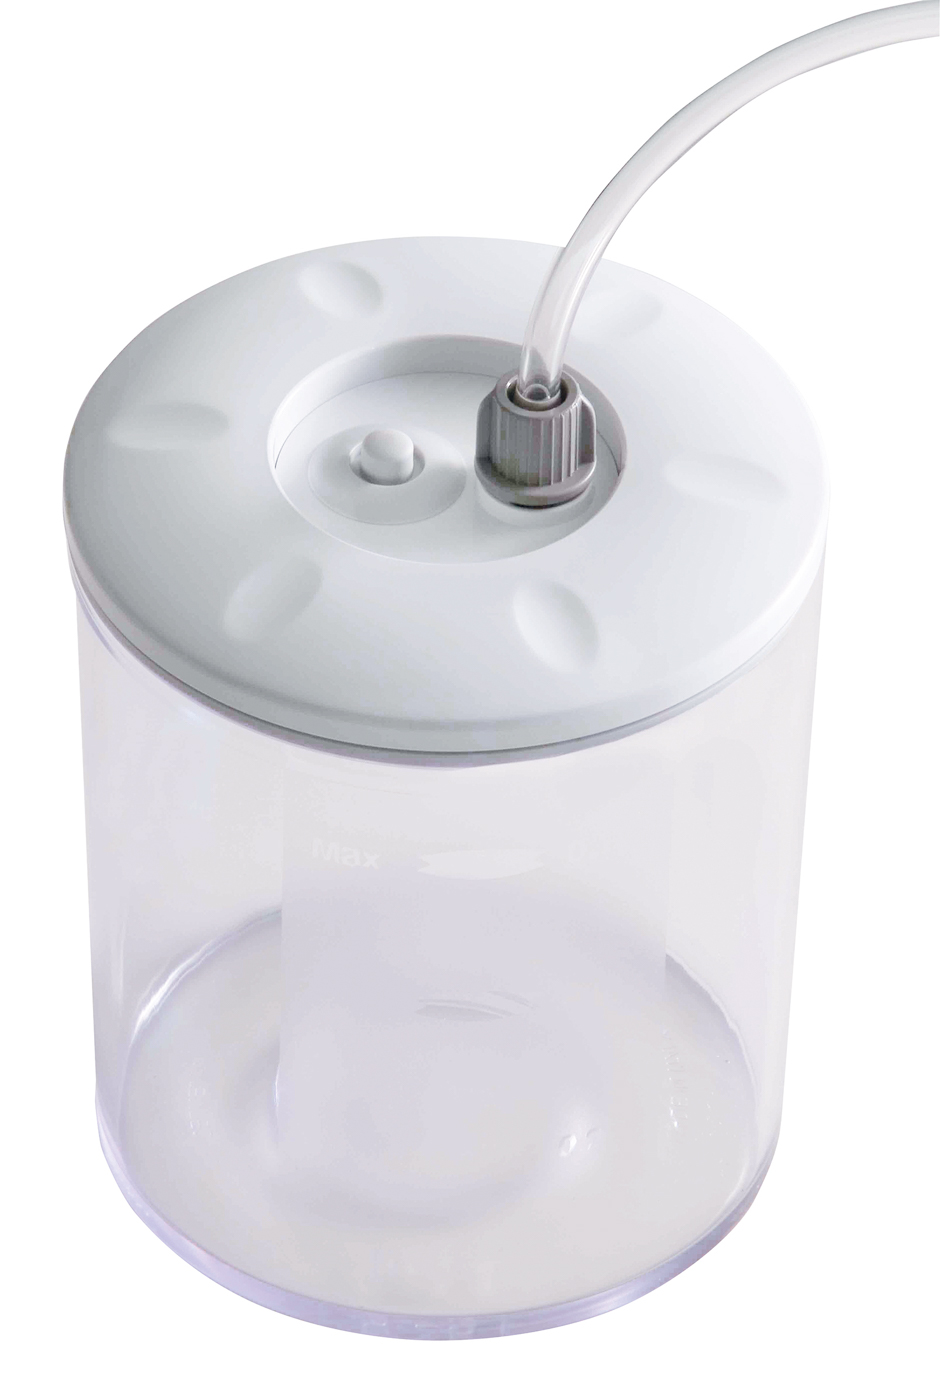 Bartscher Vakuumierbehälter | Inhalt: 1,5 Liter | Maße: 13,5 x 13,5 x 180 cm. Gewicht: 0,3 kg